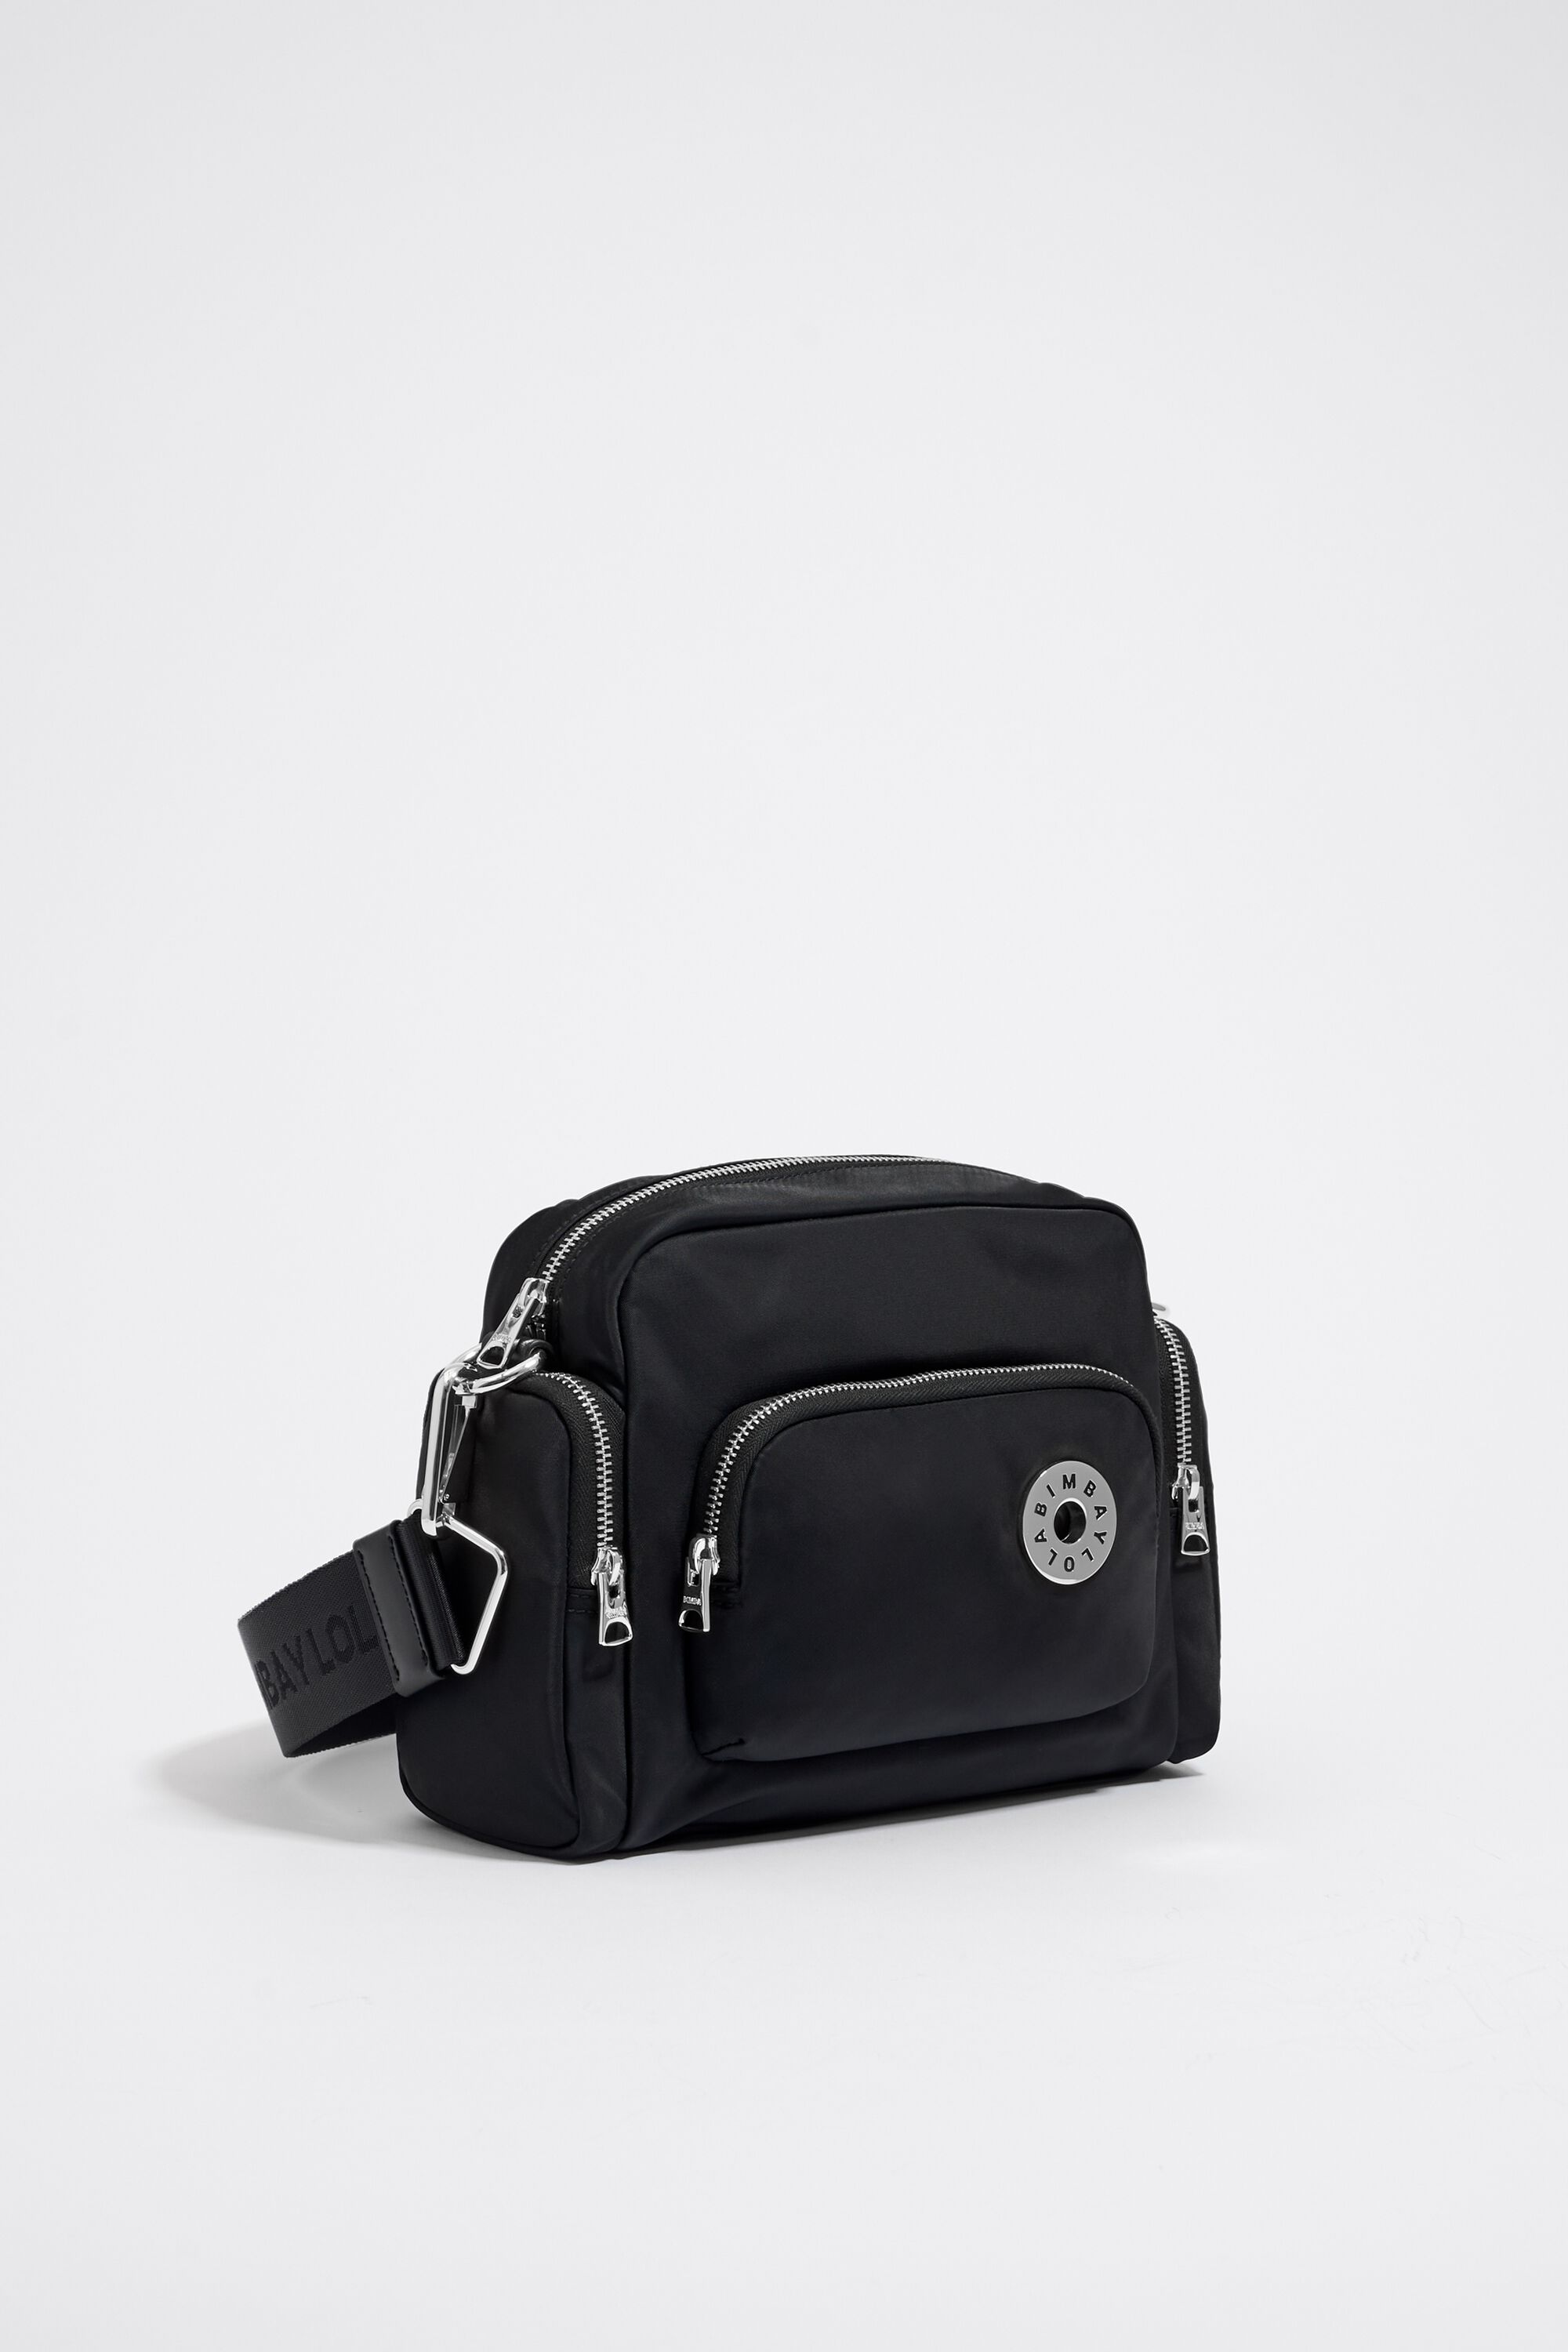 Shop bimba & lola S black nylon crossbody bag (222BBHJ1M.T1000